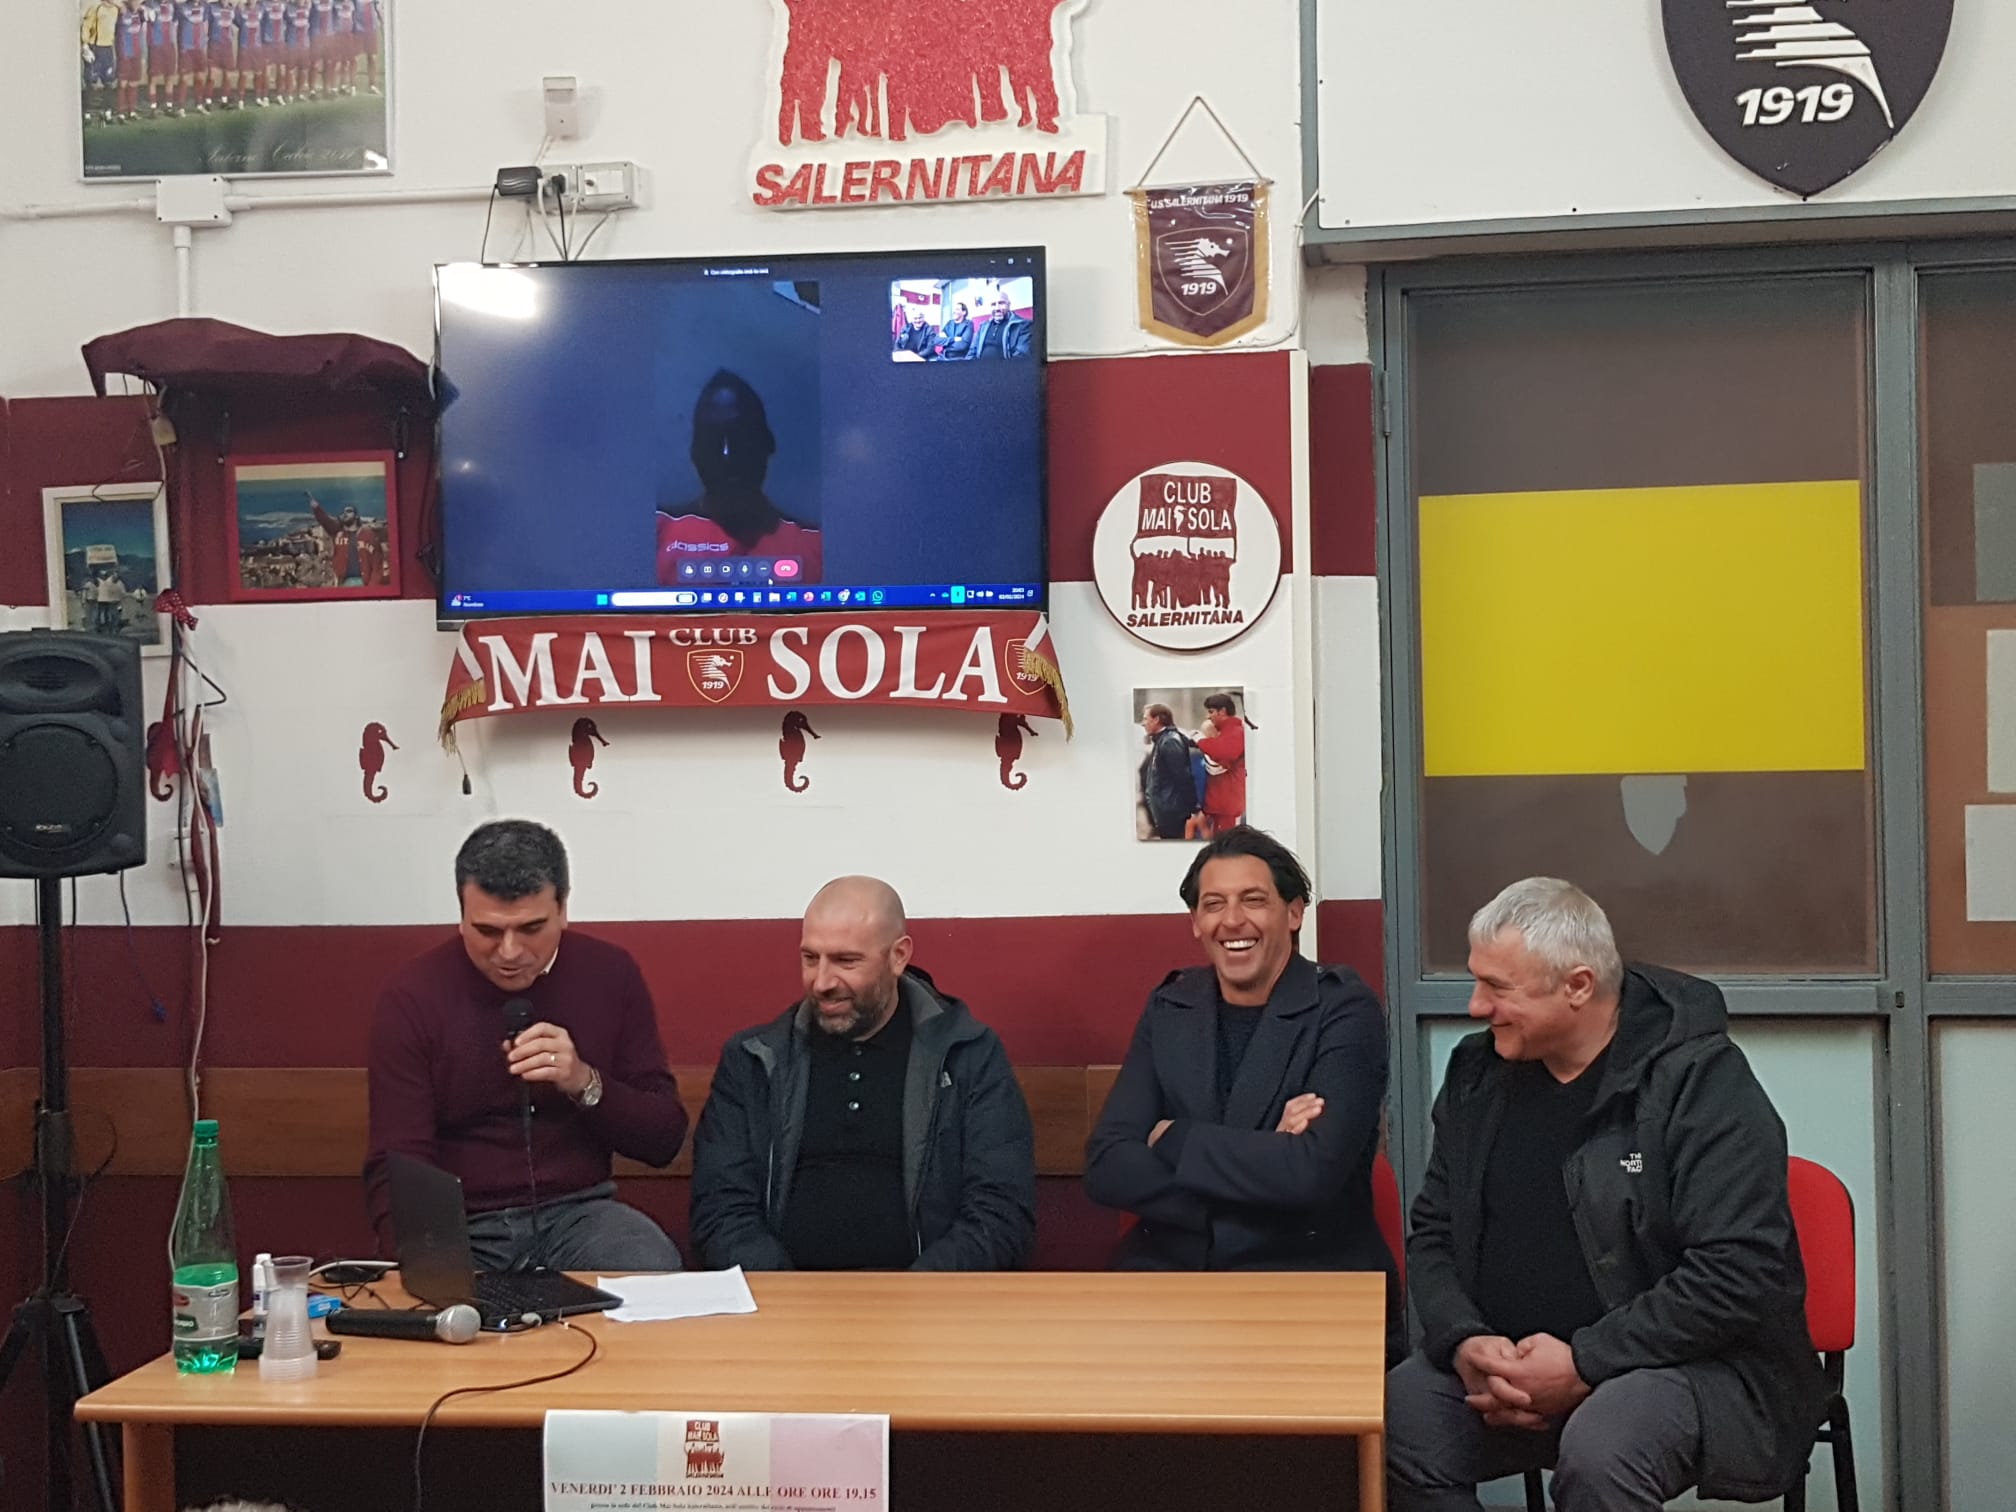 Salerno: Club Mai Sola Salernitana 1919, iniziativa di solidarietà